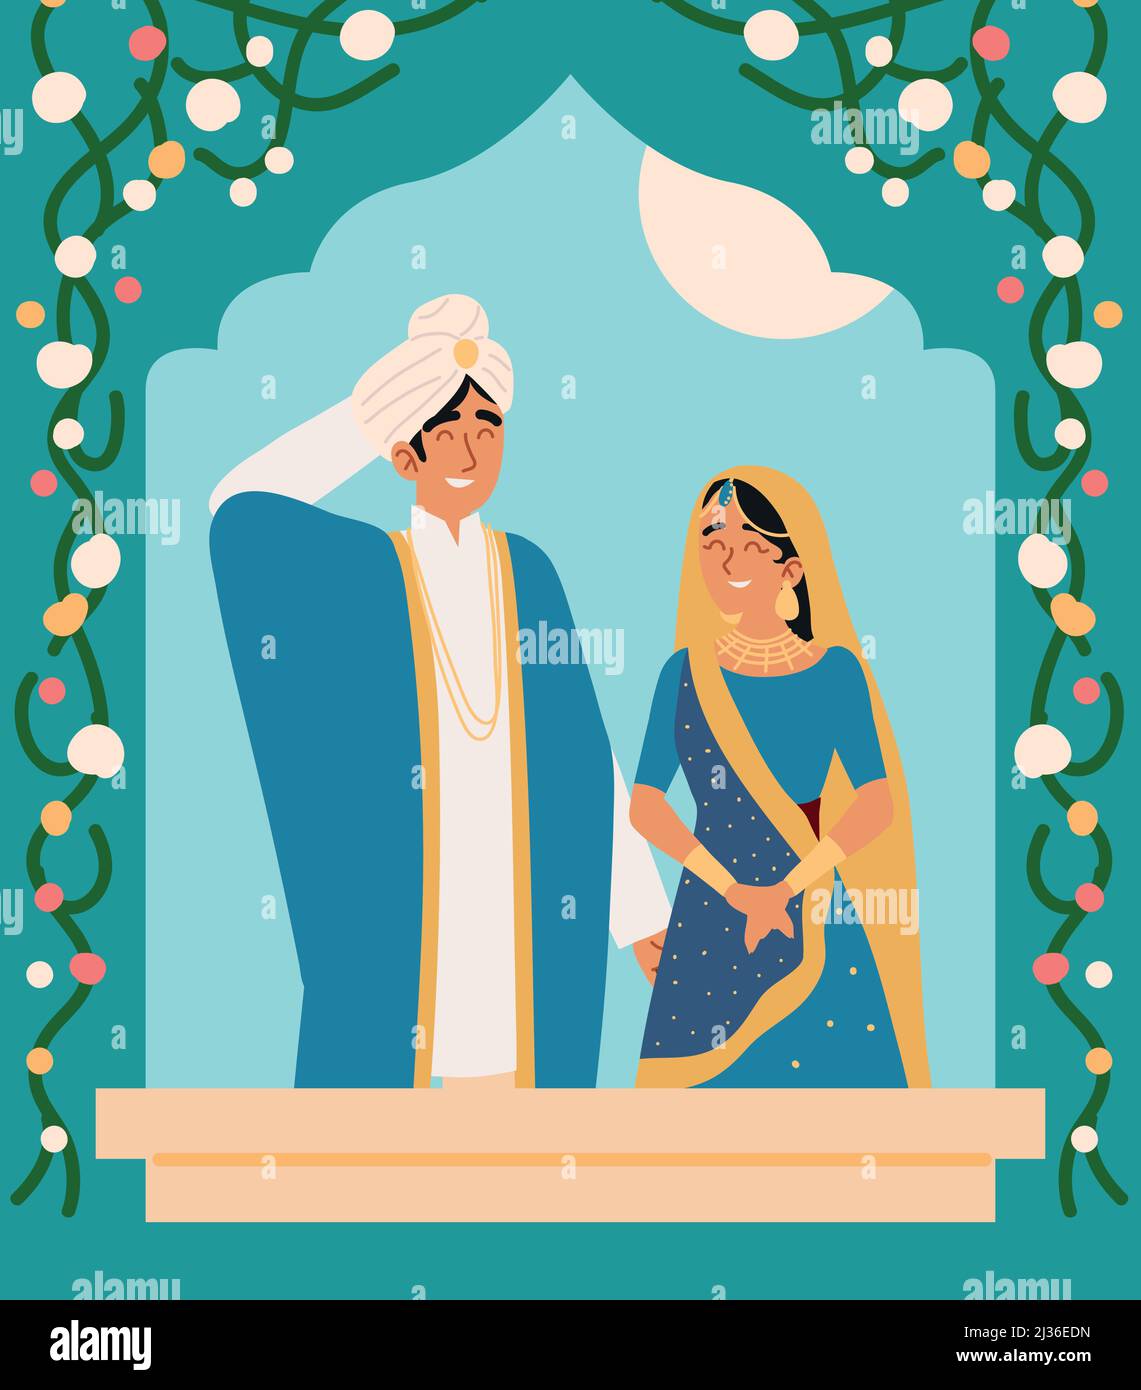 hindu wedding couple Stock Vector Image & Art - Alamy